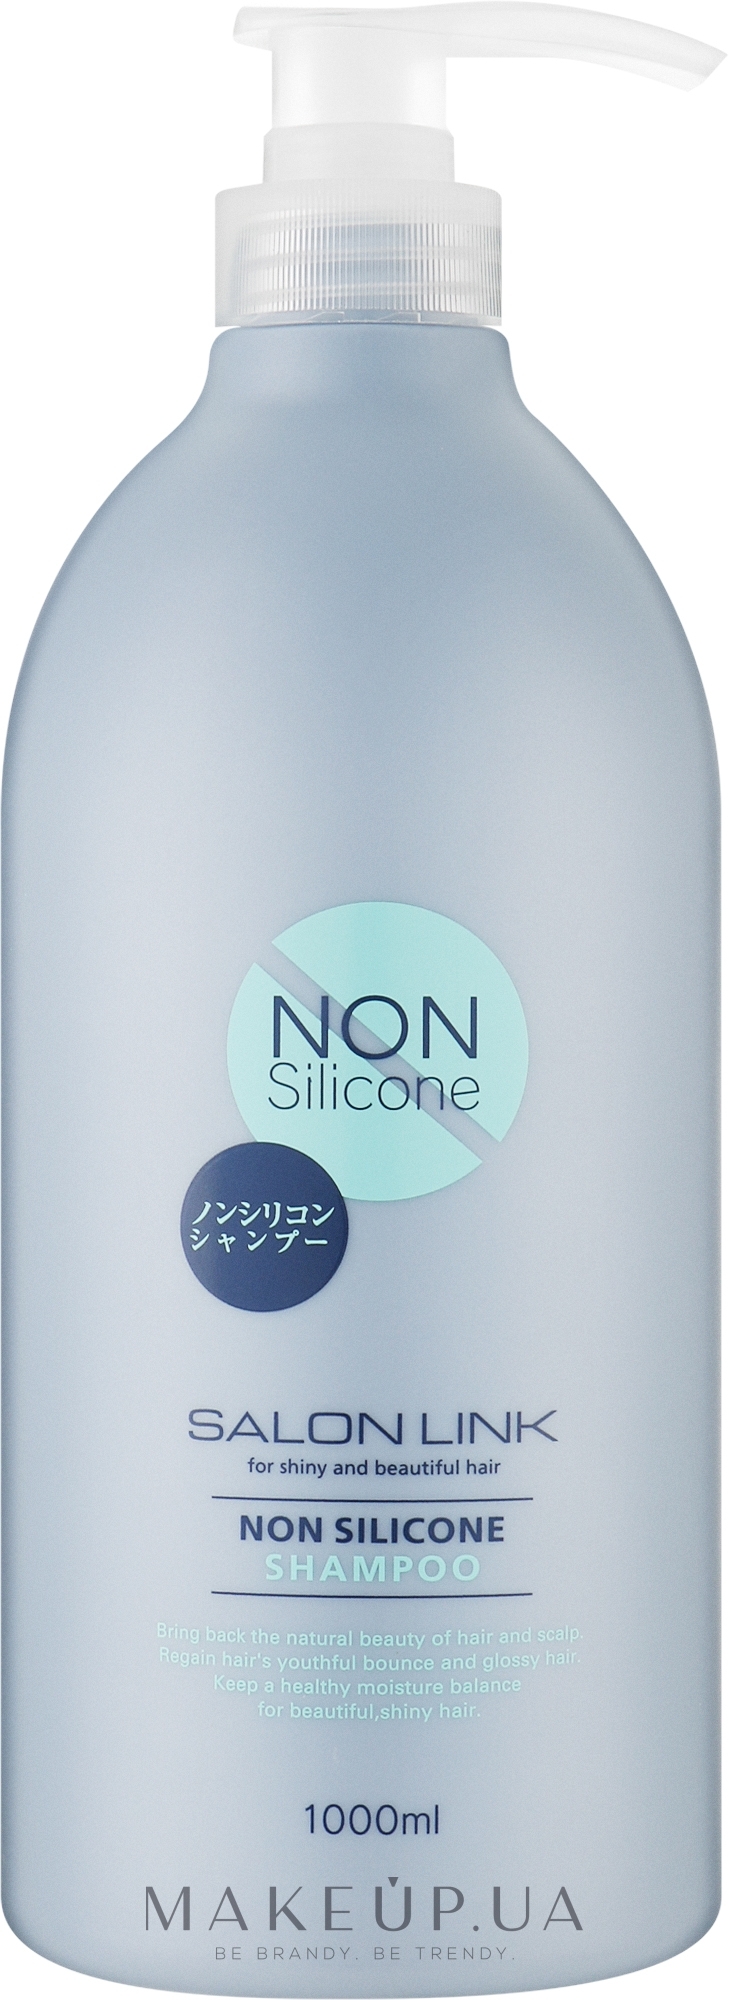 Зволожуючий шампунь для волосся - Kumano Cosmetics Salon Link Non Silicon Shampoo — фото 1000ml